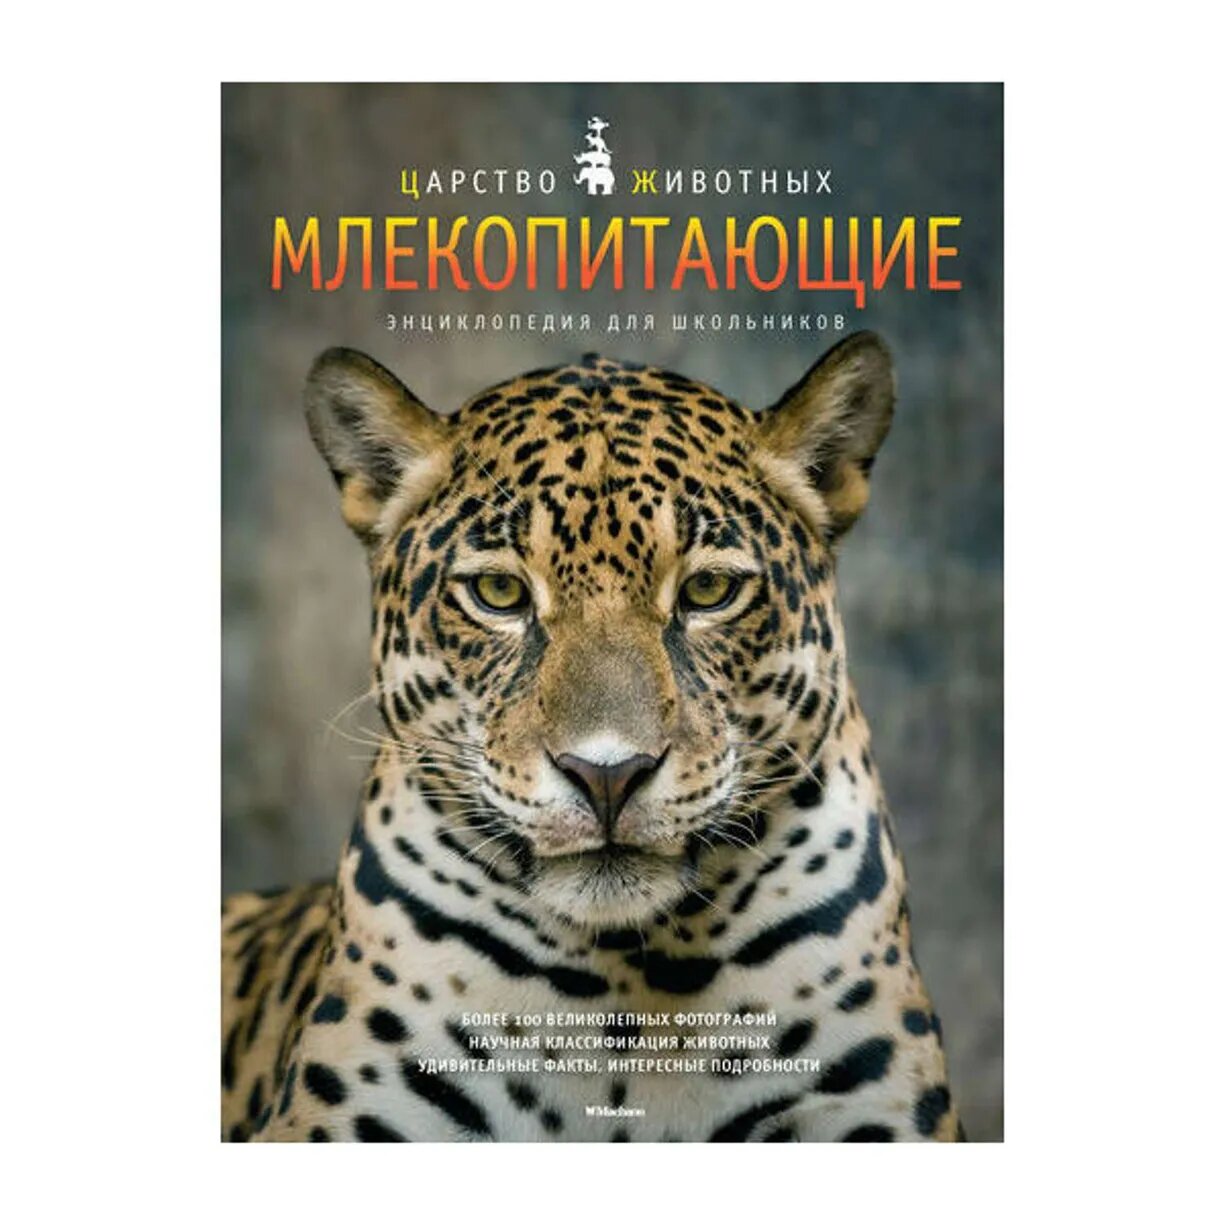 Млекопитающие. Энциклопедия для школьников. Царство животных